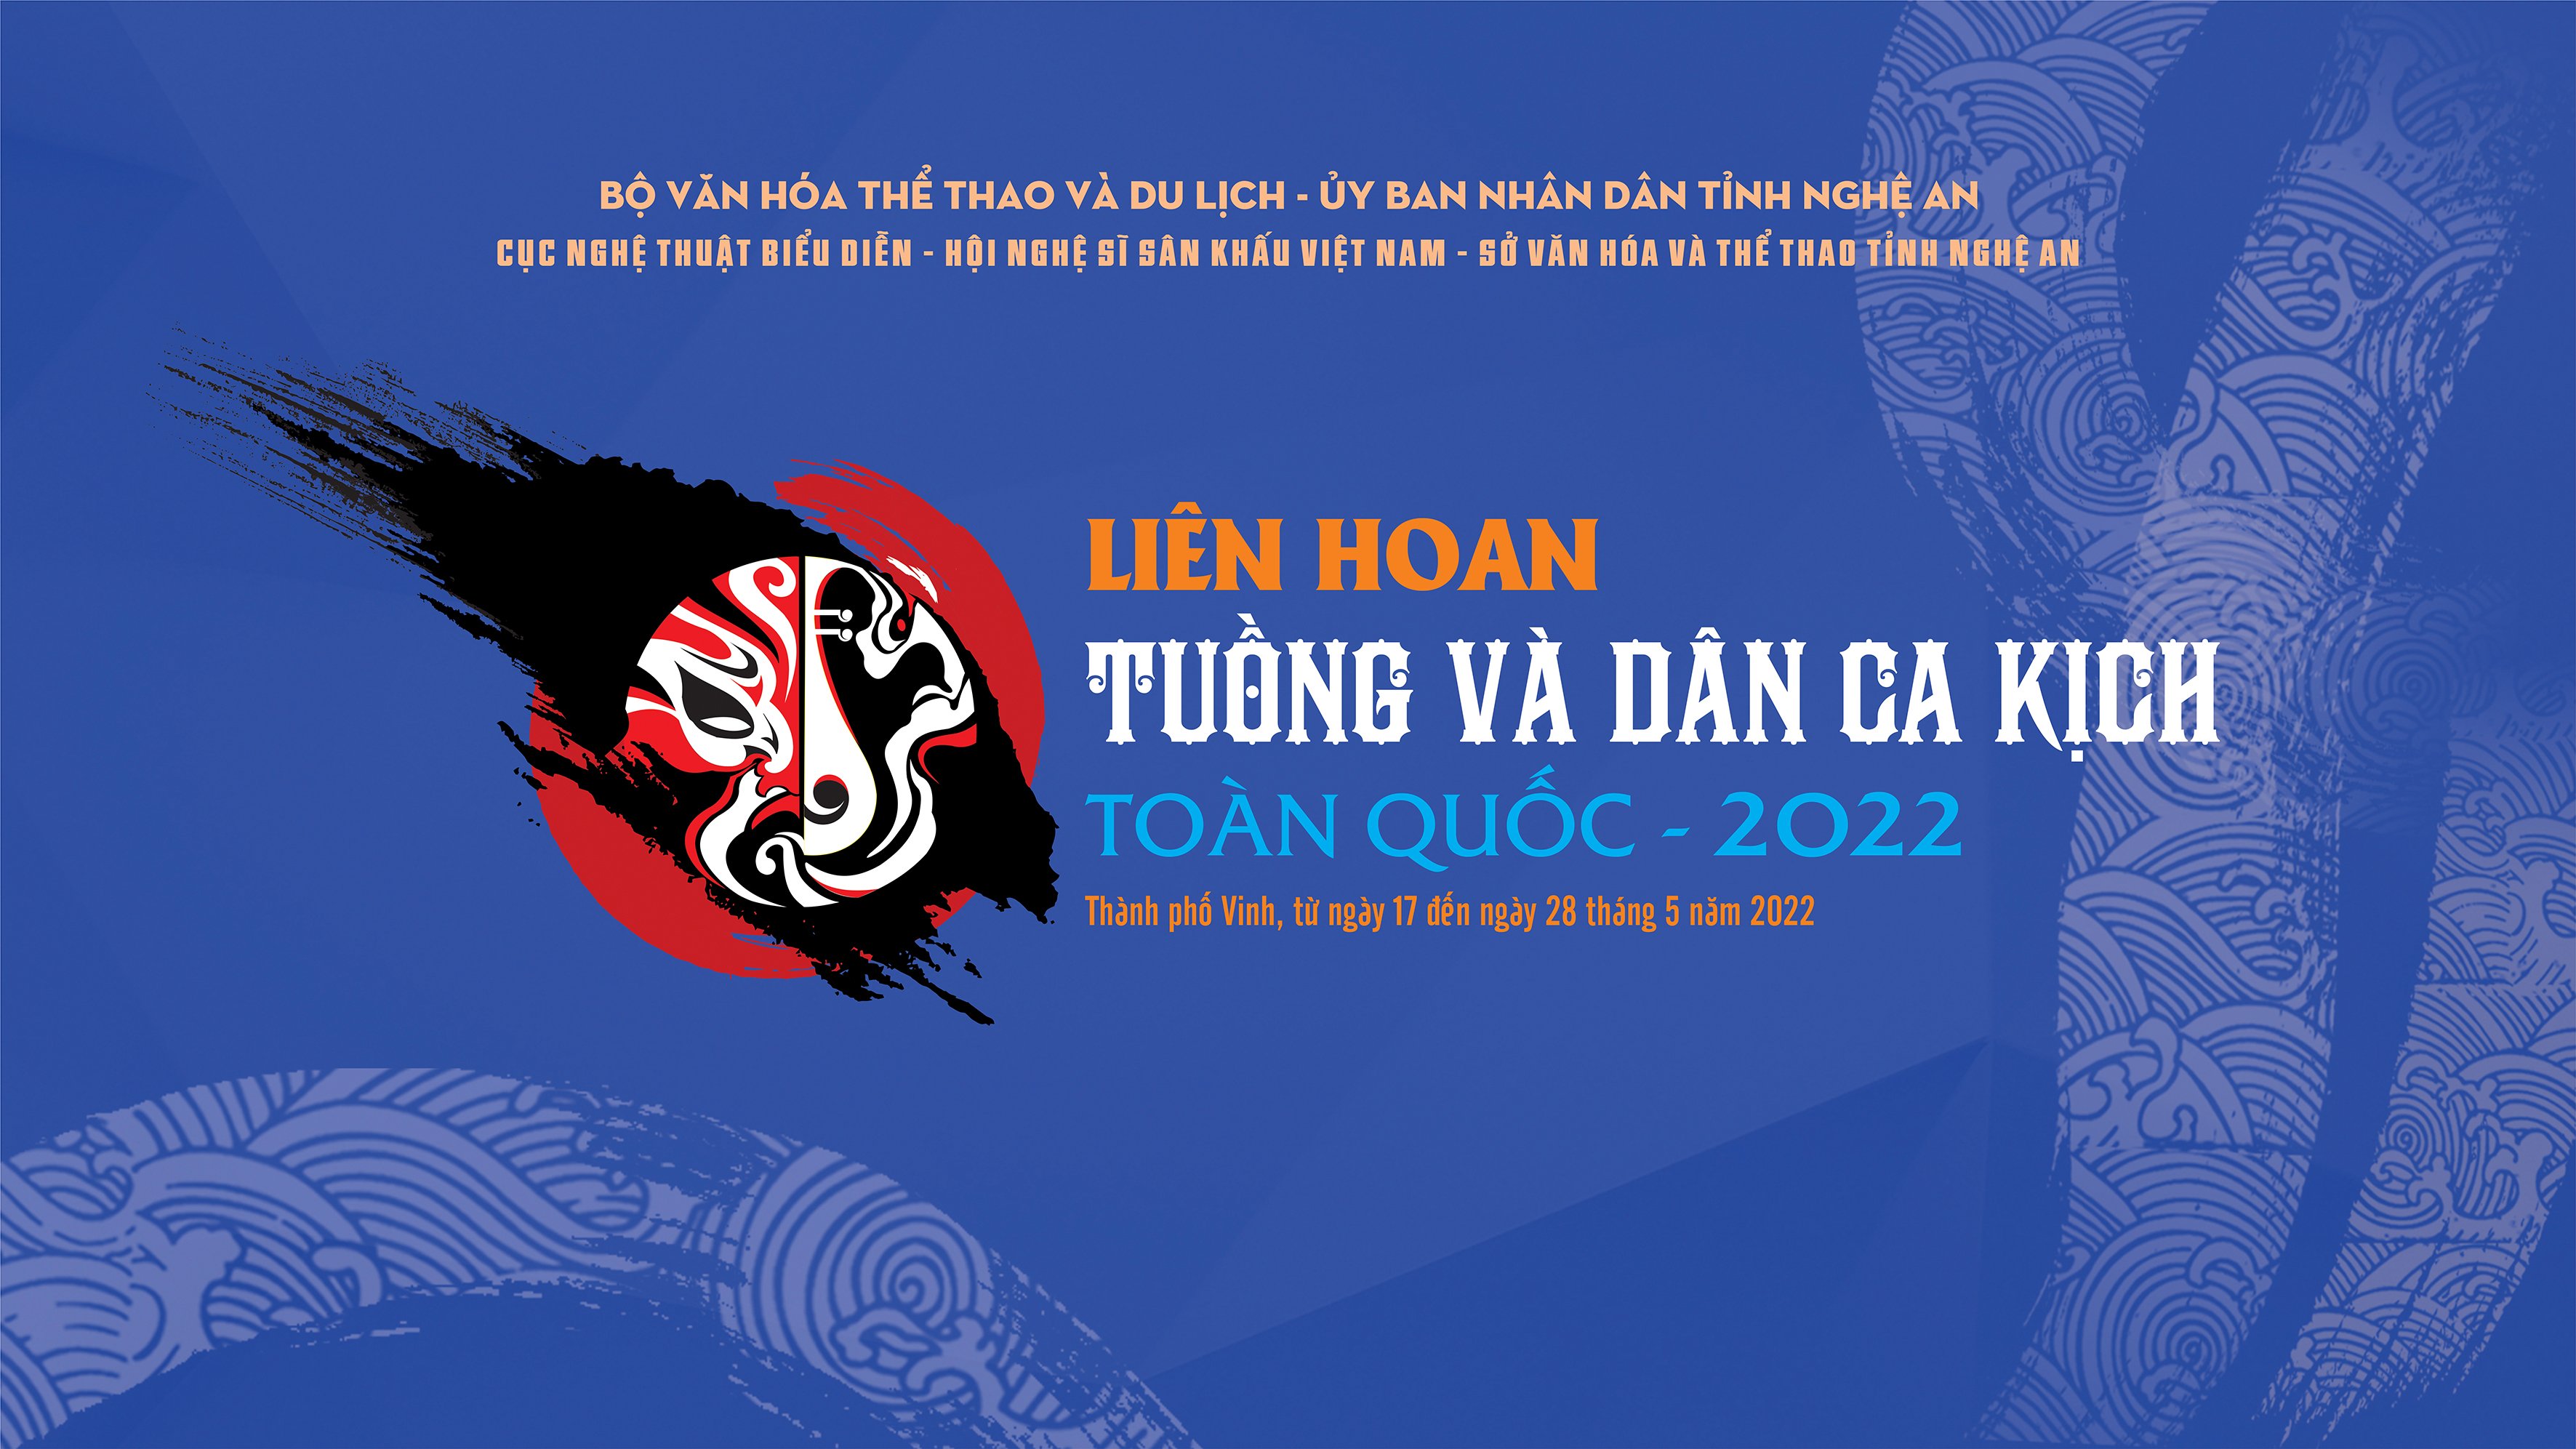 LIÊN HOAN TUỒNG VÀ DÂN CA KỊCH TOÀN QUỐC 2022 - Hồn thiêng sông núi Nhà hát Nghệ thuật truyền thống Cung đình Huế